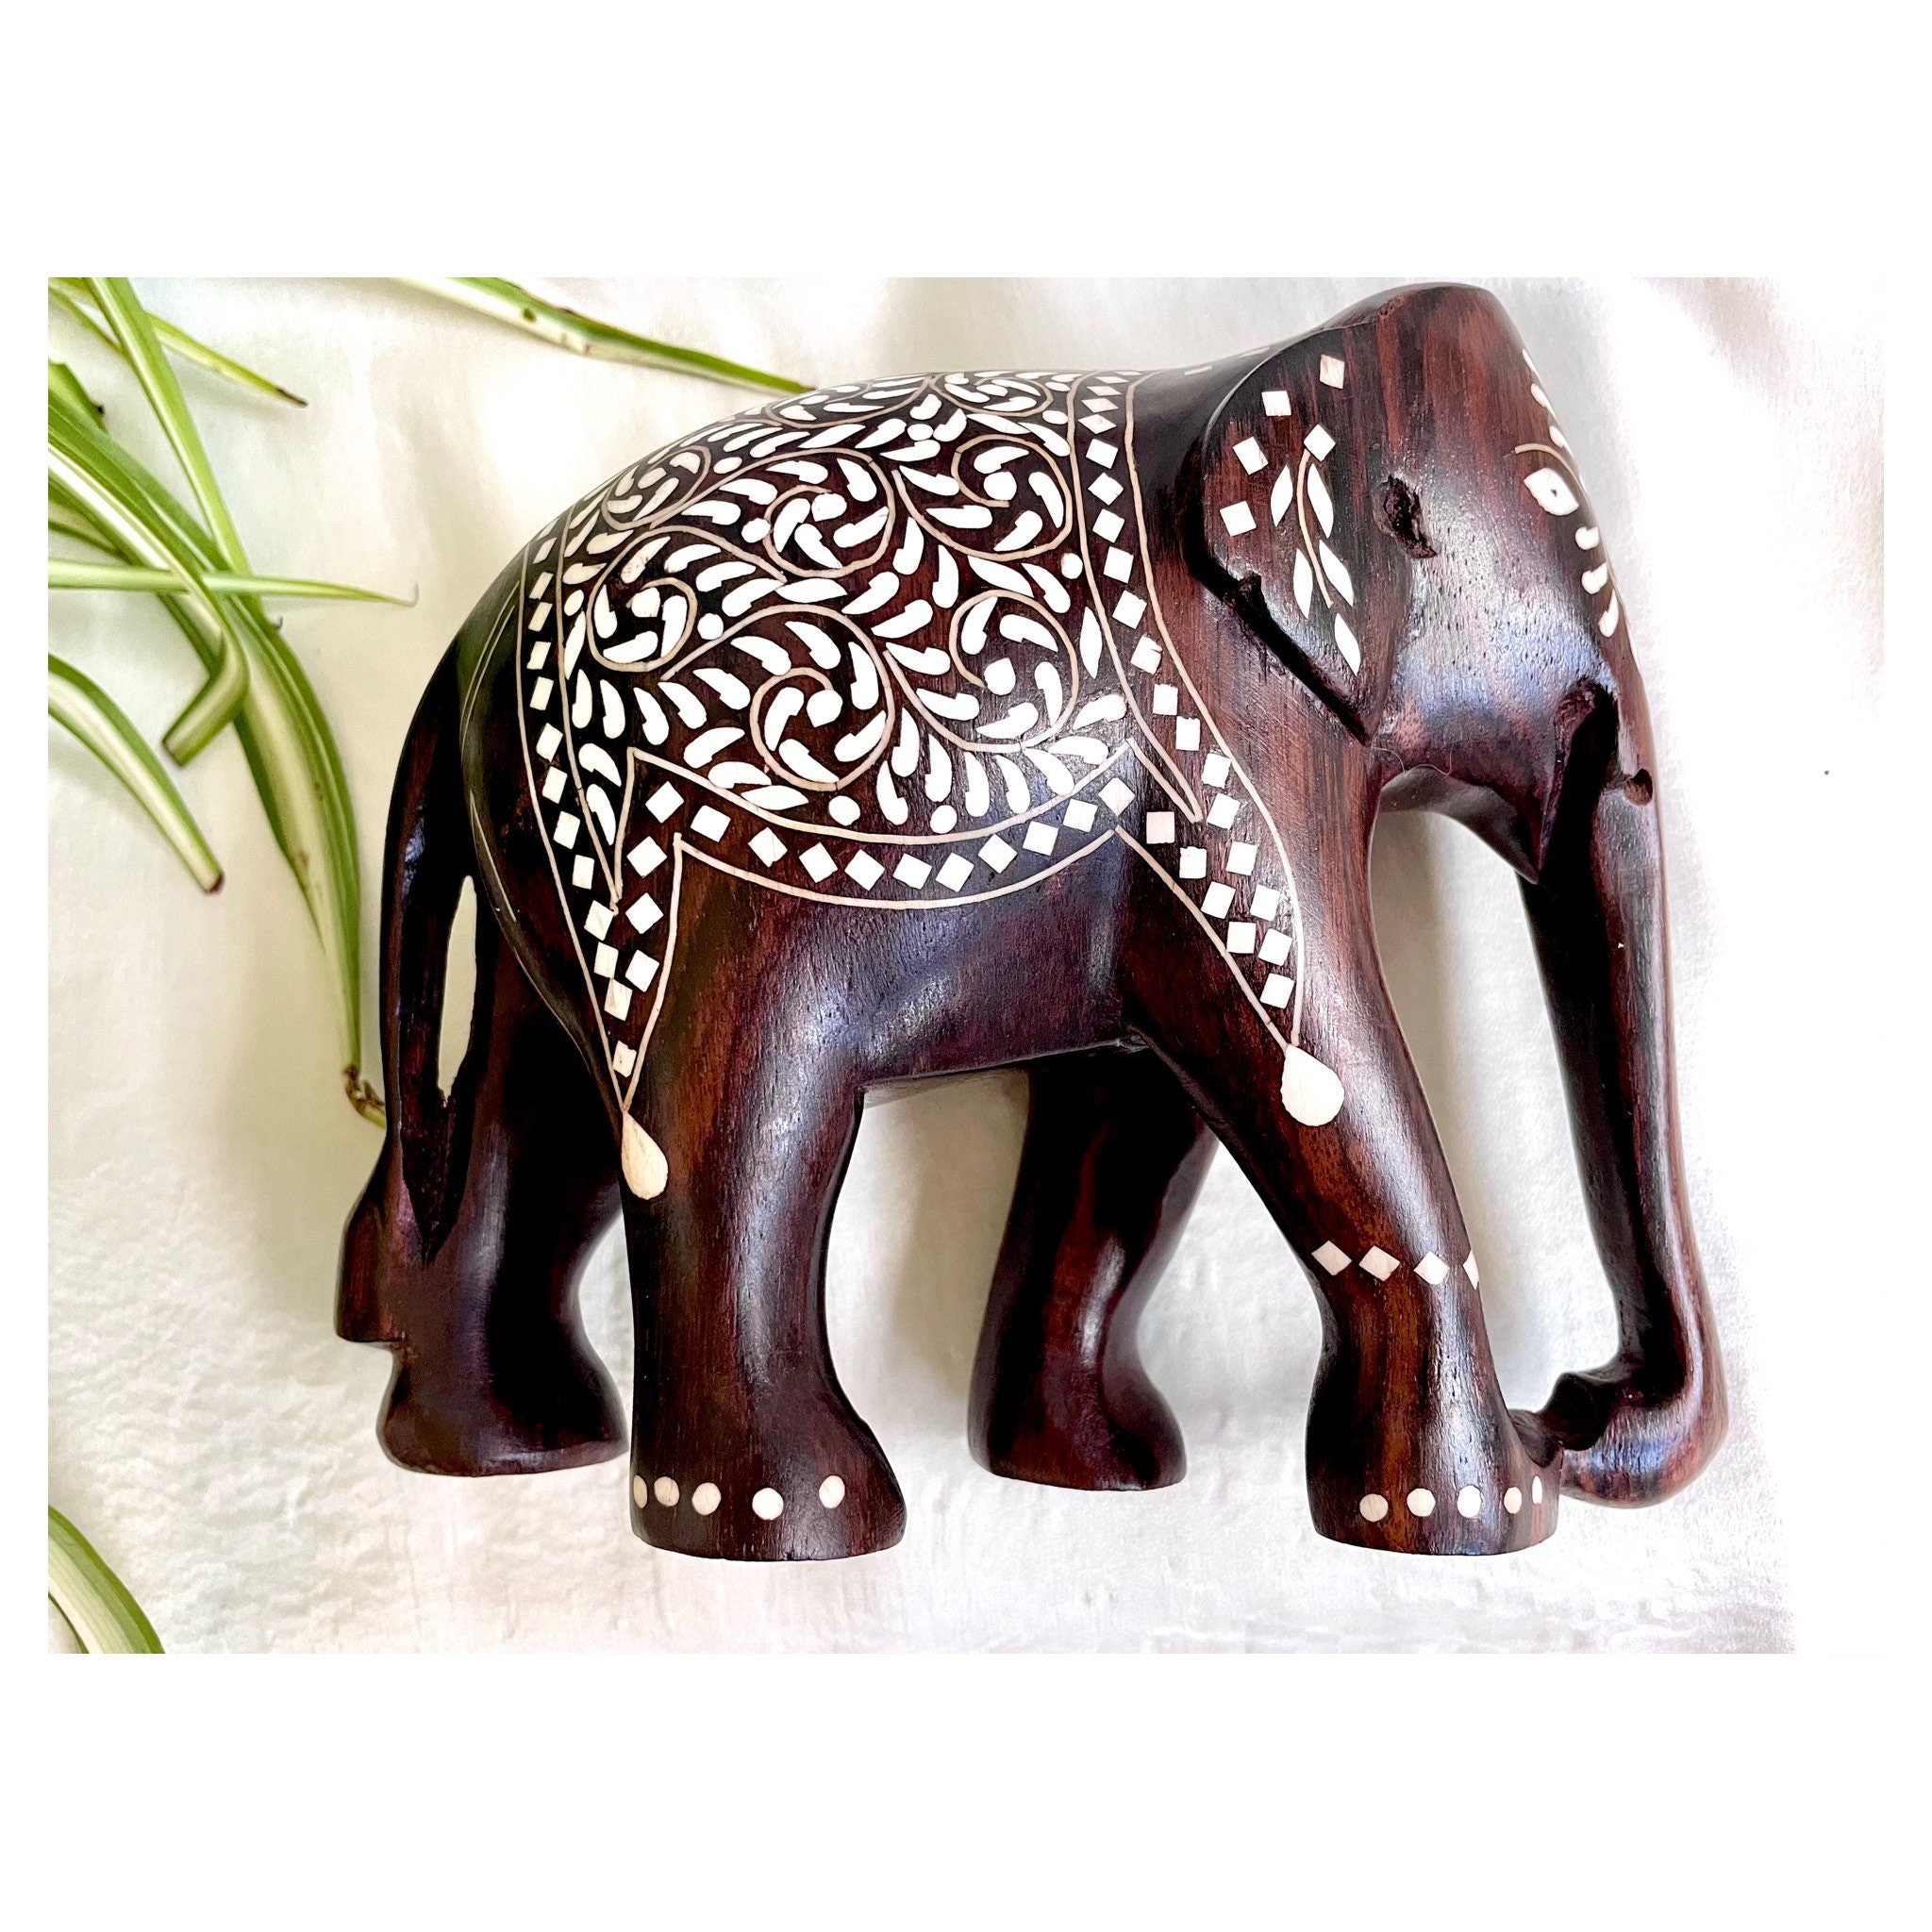 Juego de decoración de elefante de la suerte con troncos – Feng Shui resina  negro y dorado pareja elefante figuritas – Par de estatuas de elefantes